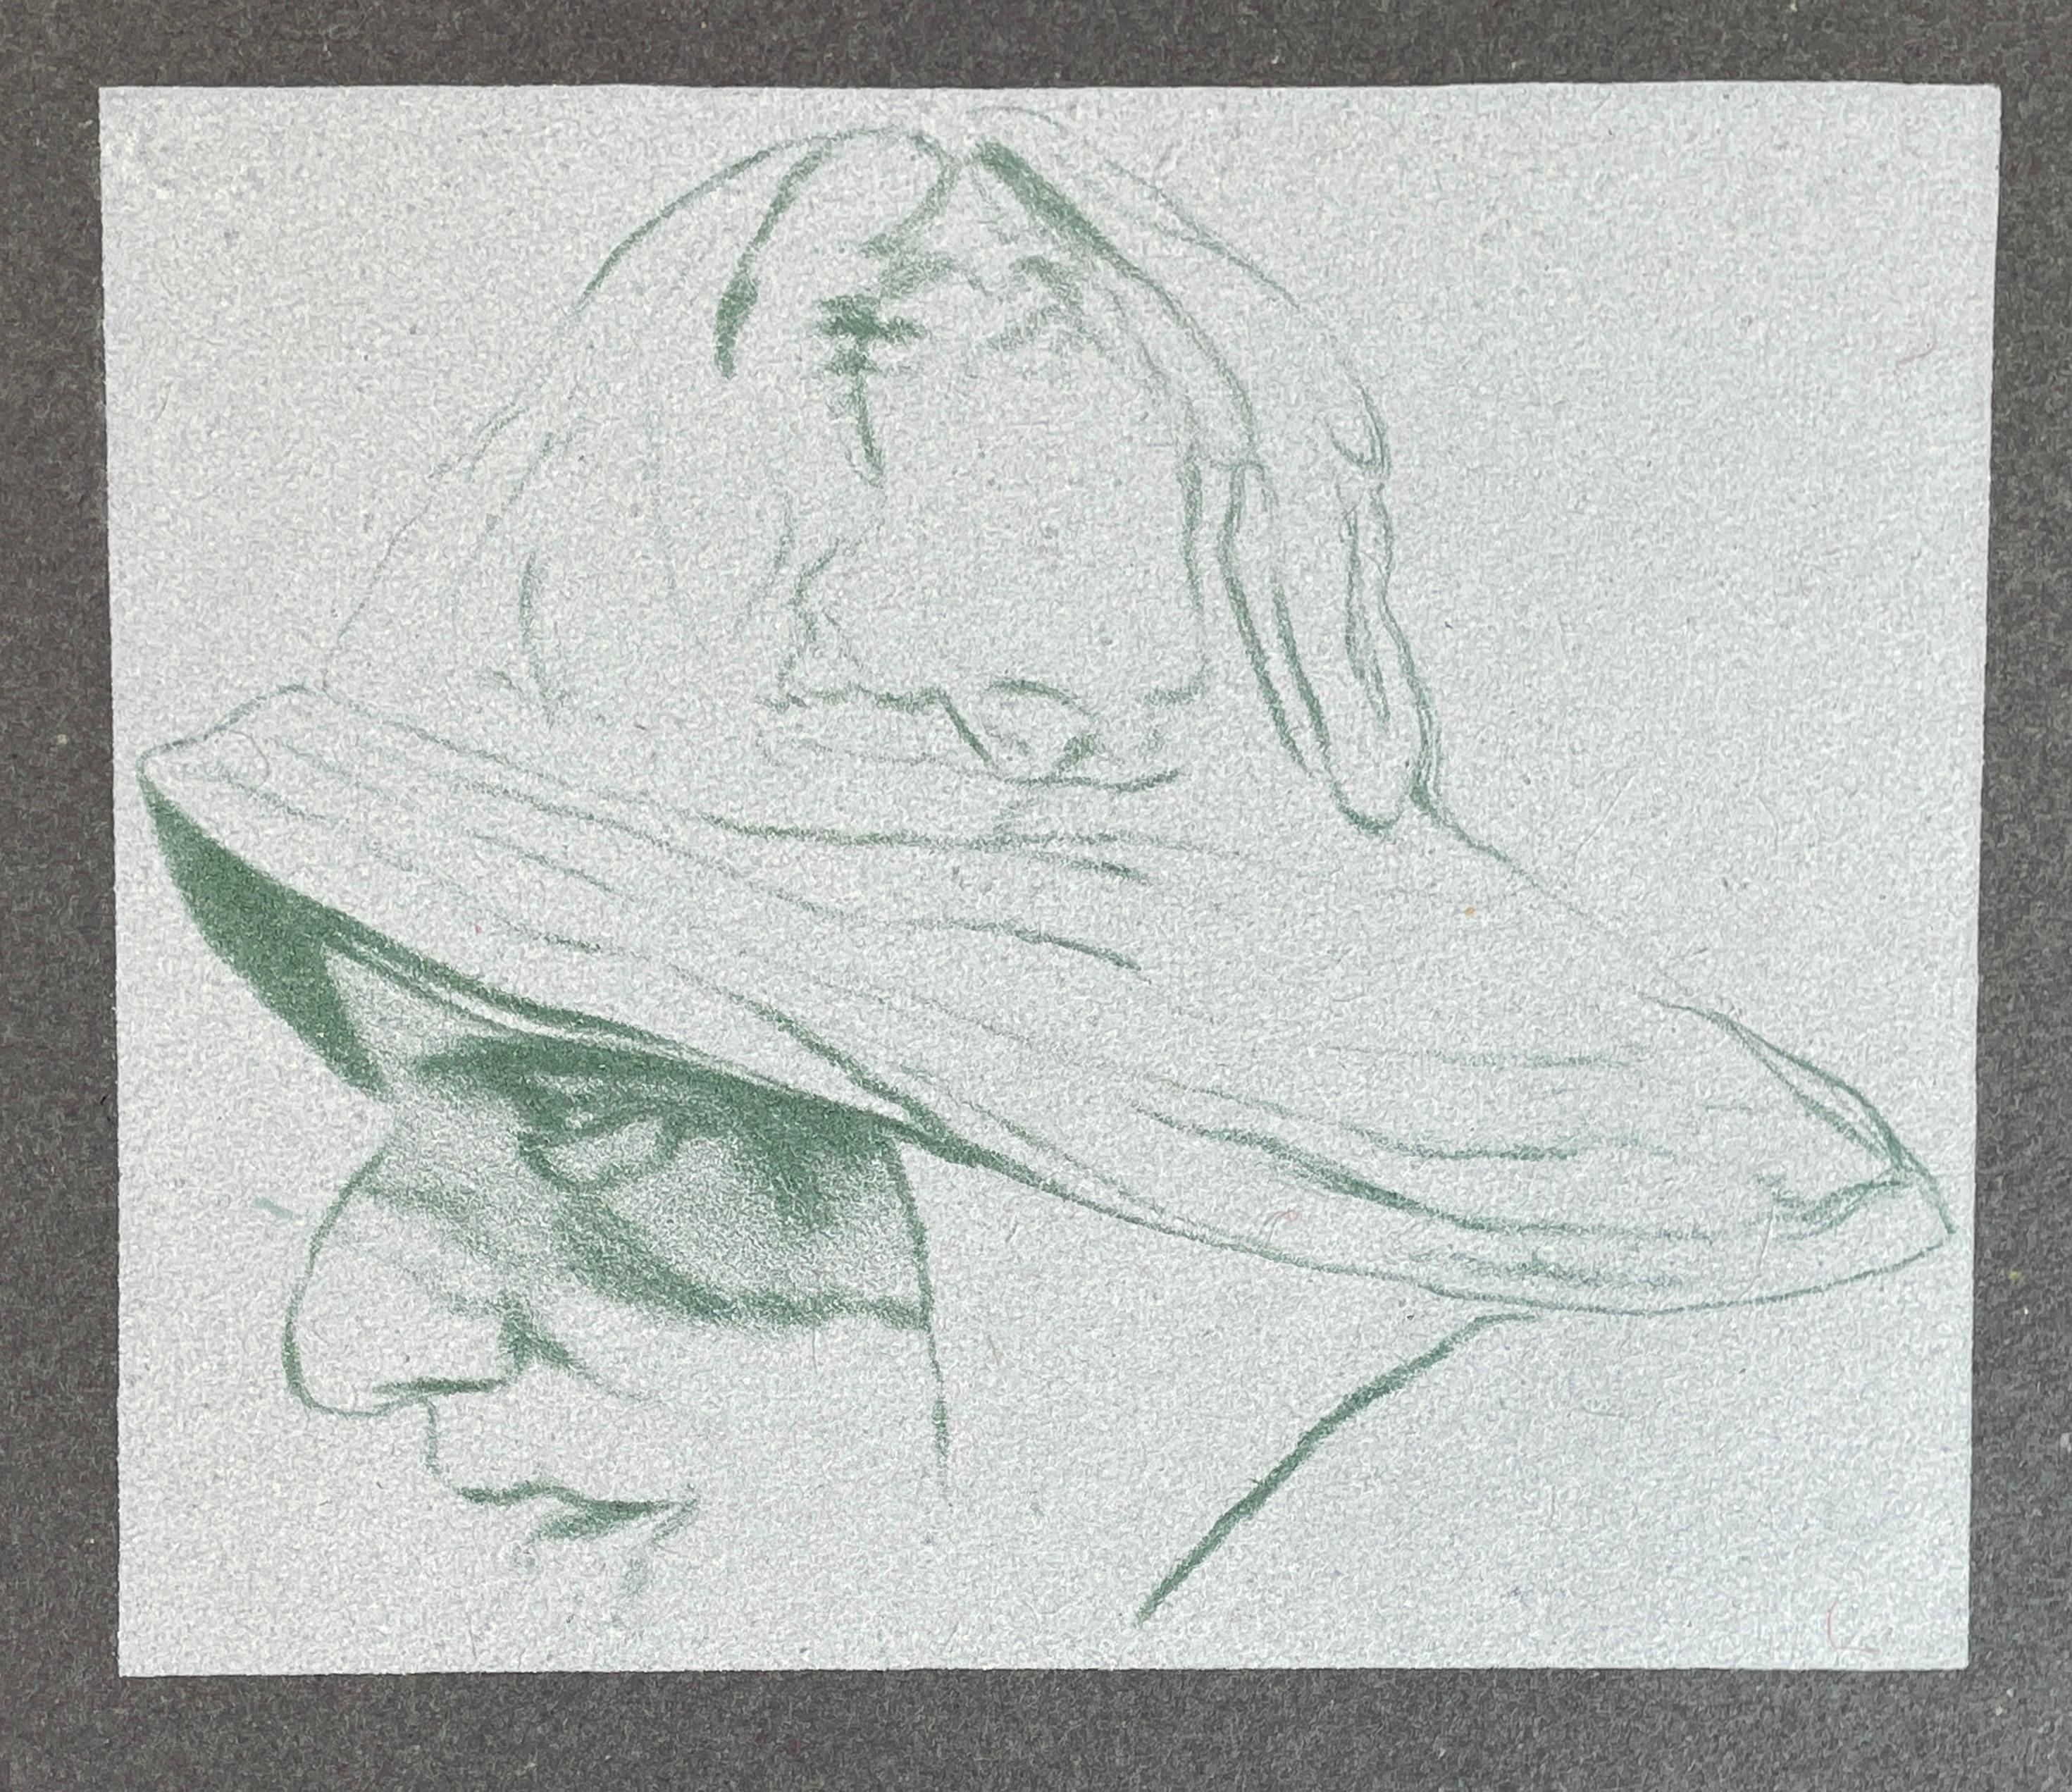 Cap'n A.B Dick (A) gray fisherman portrait sou'wester hat R.B. Kitaj lithograph - Print by Ronald Brooks Kitaj